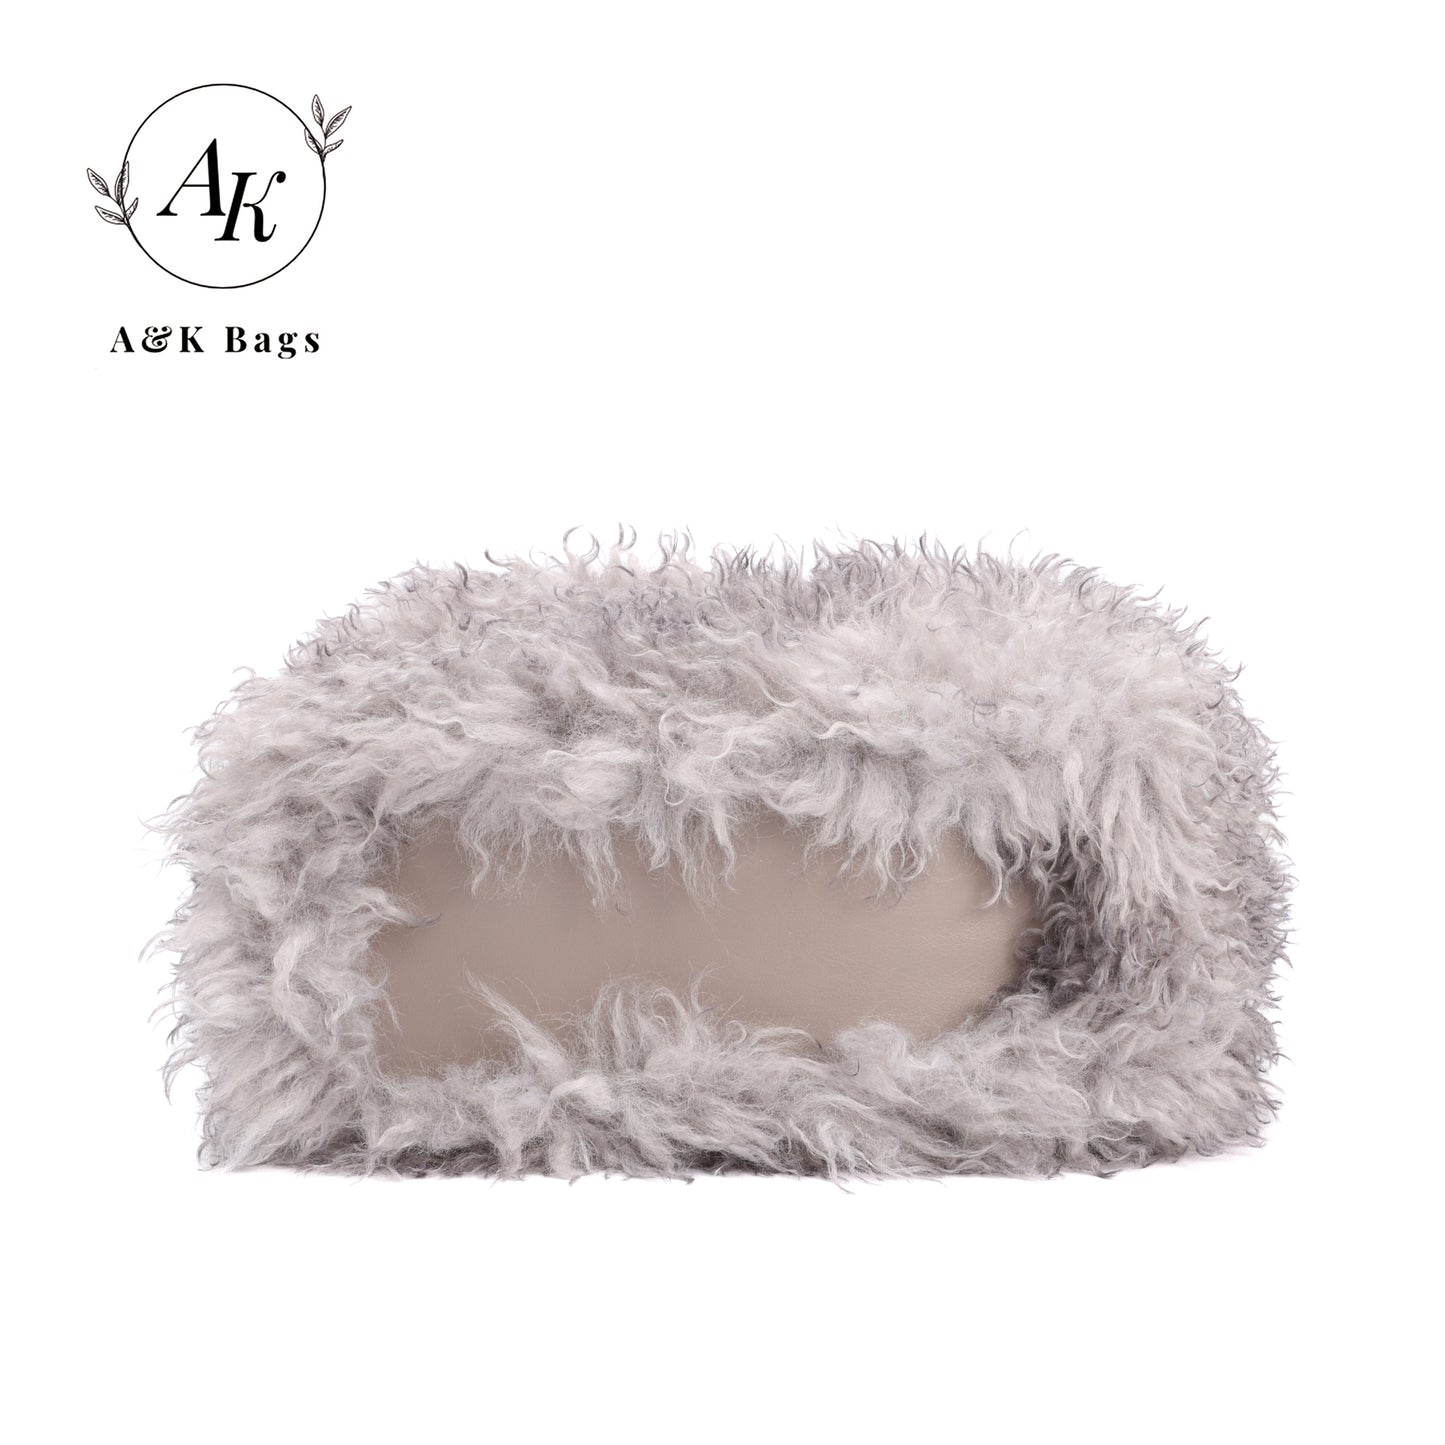 AK Grey Fluffy Faux Fur Winter women purse